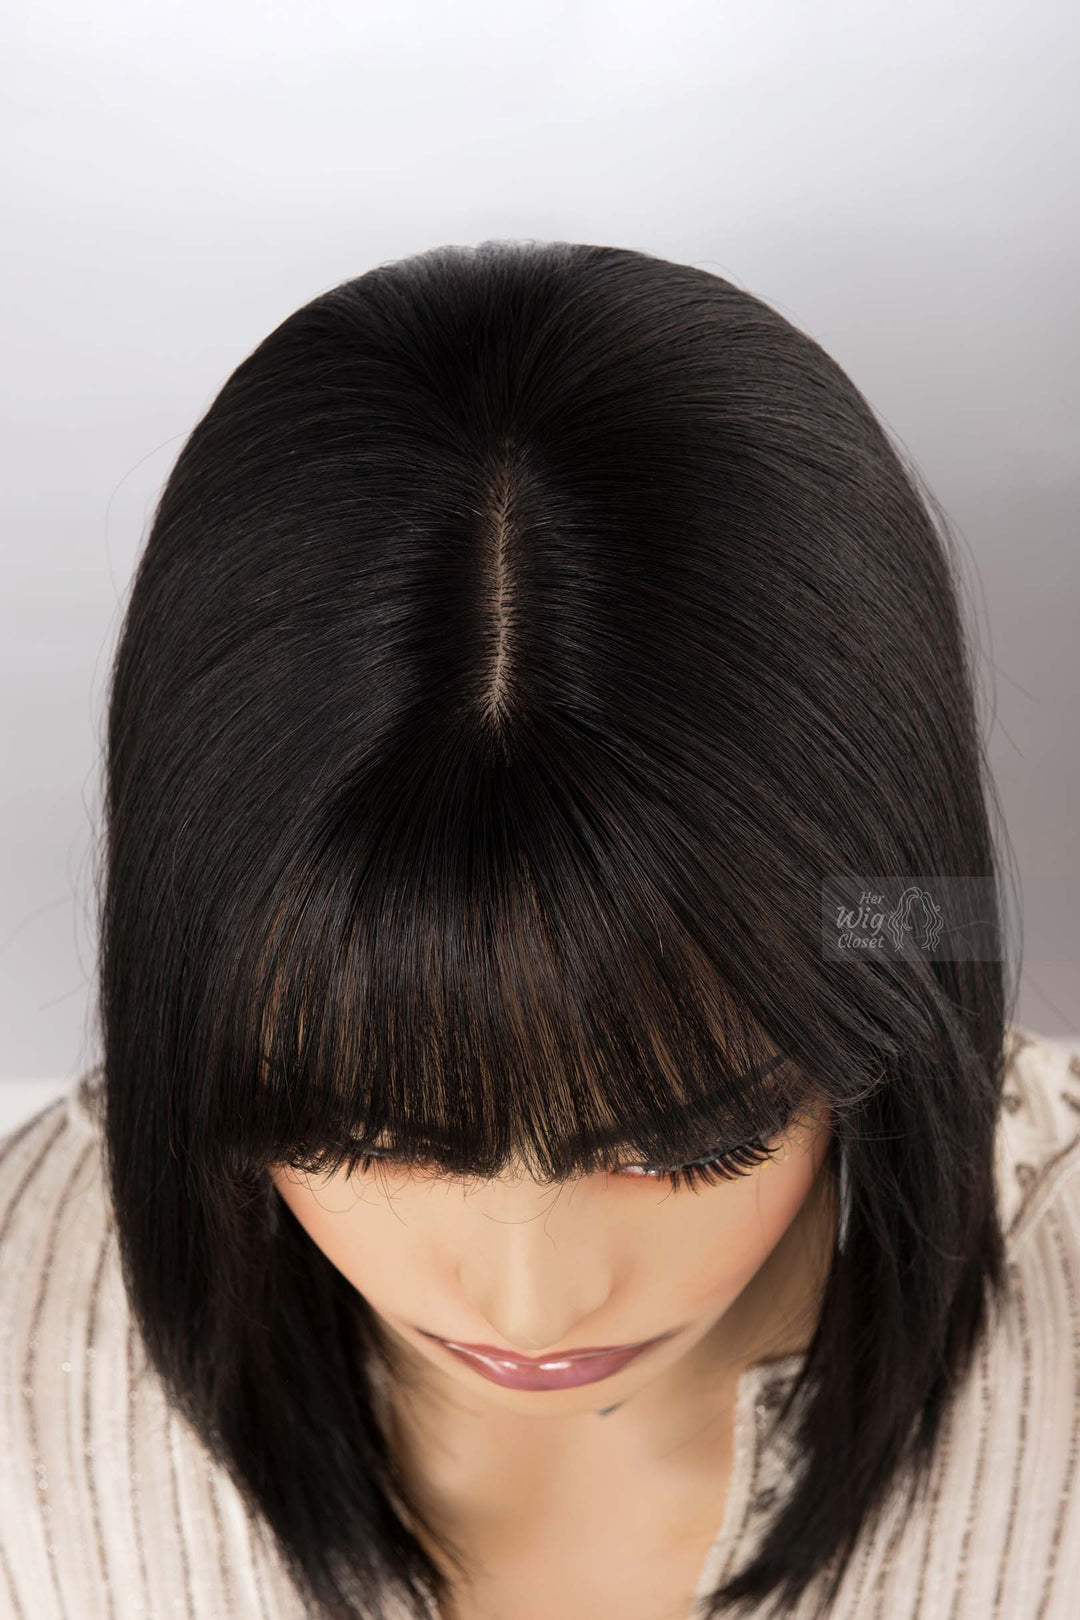 Natural Black Medium Length Straight Bob Human Hair Wig with bangs